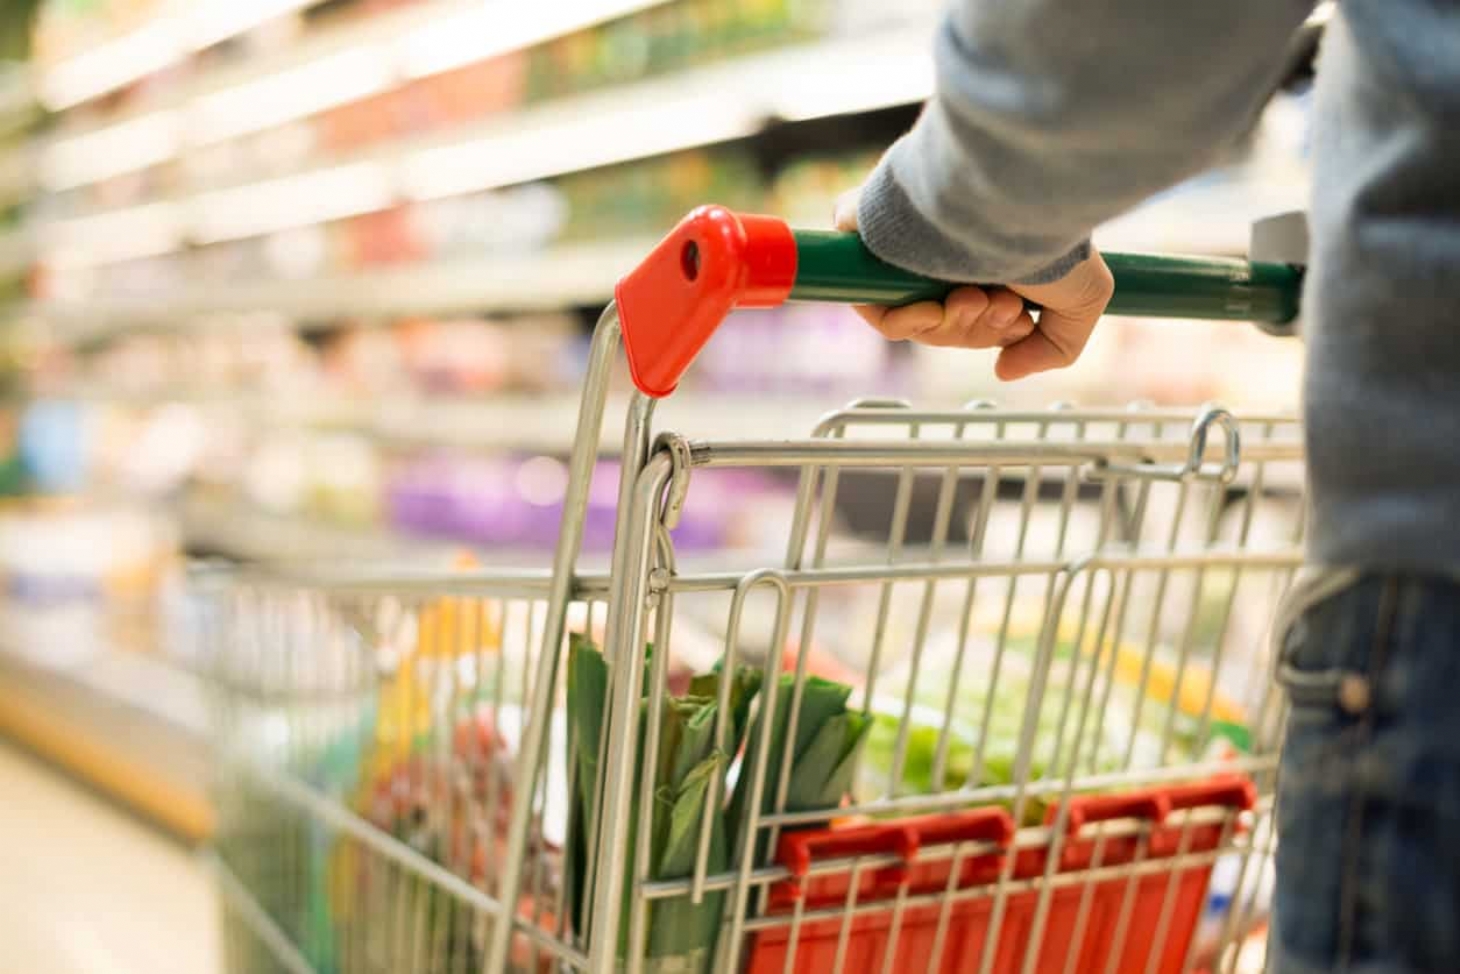 Covid-19: como se comportar durante as compras em feiras ou supermercados | Jornal da Orla